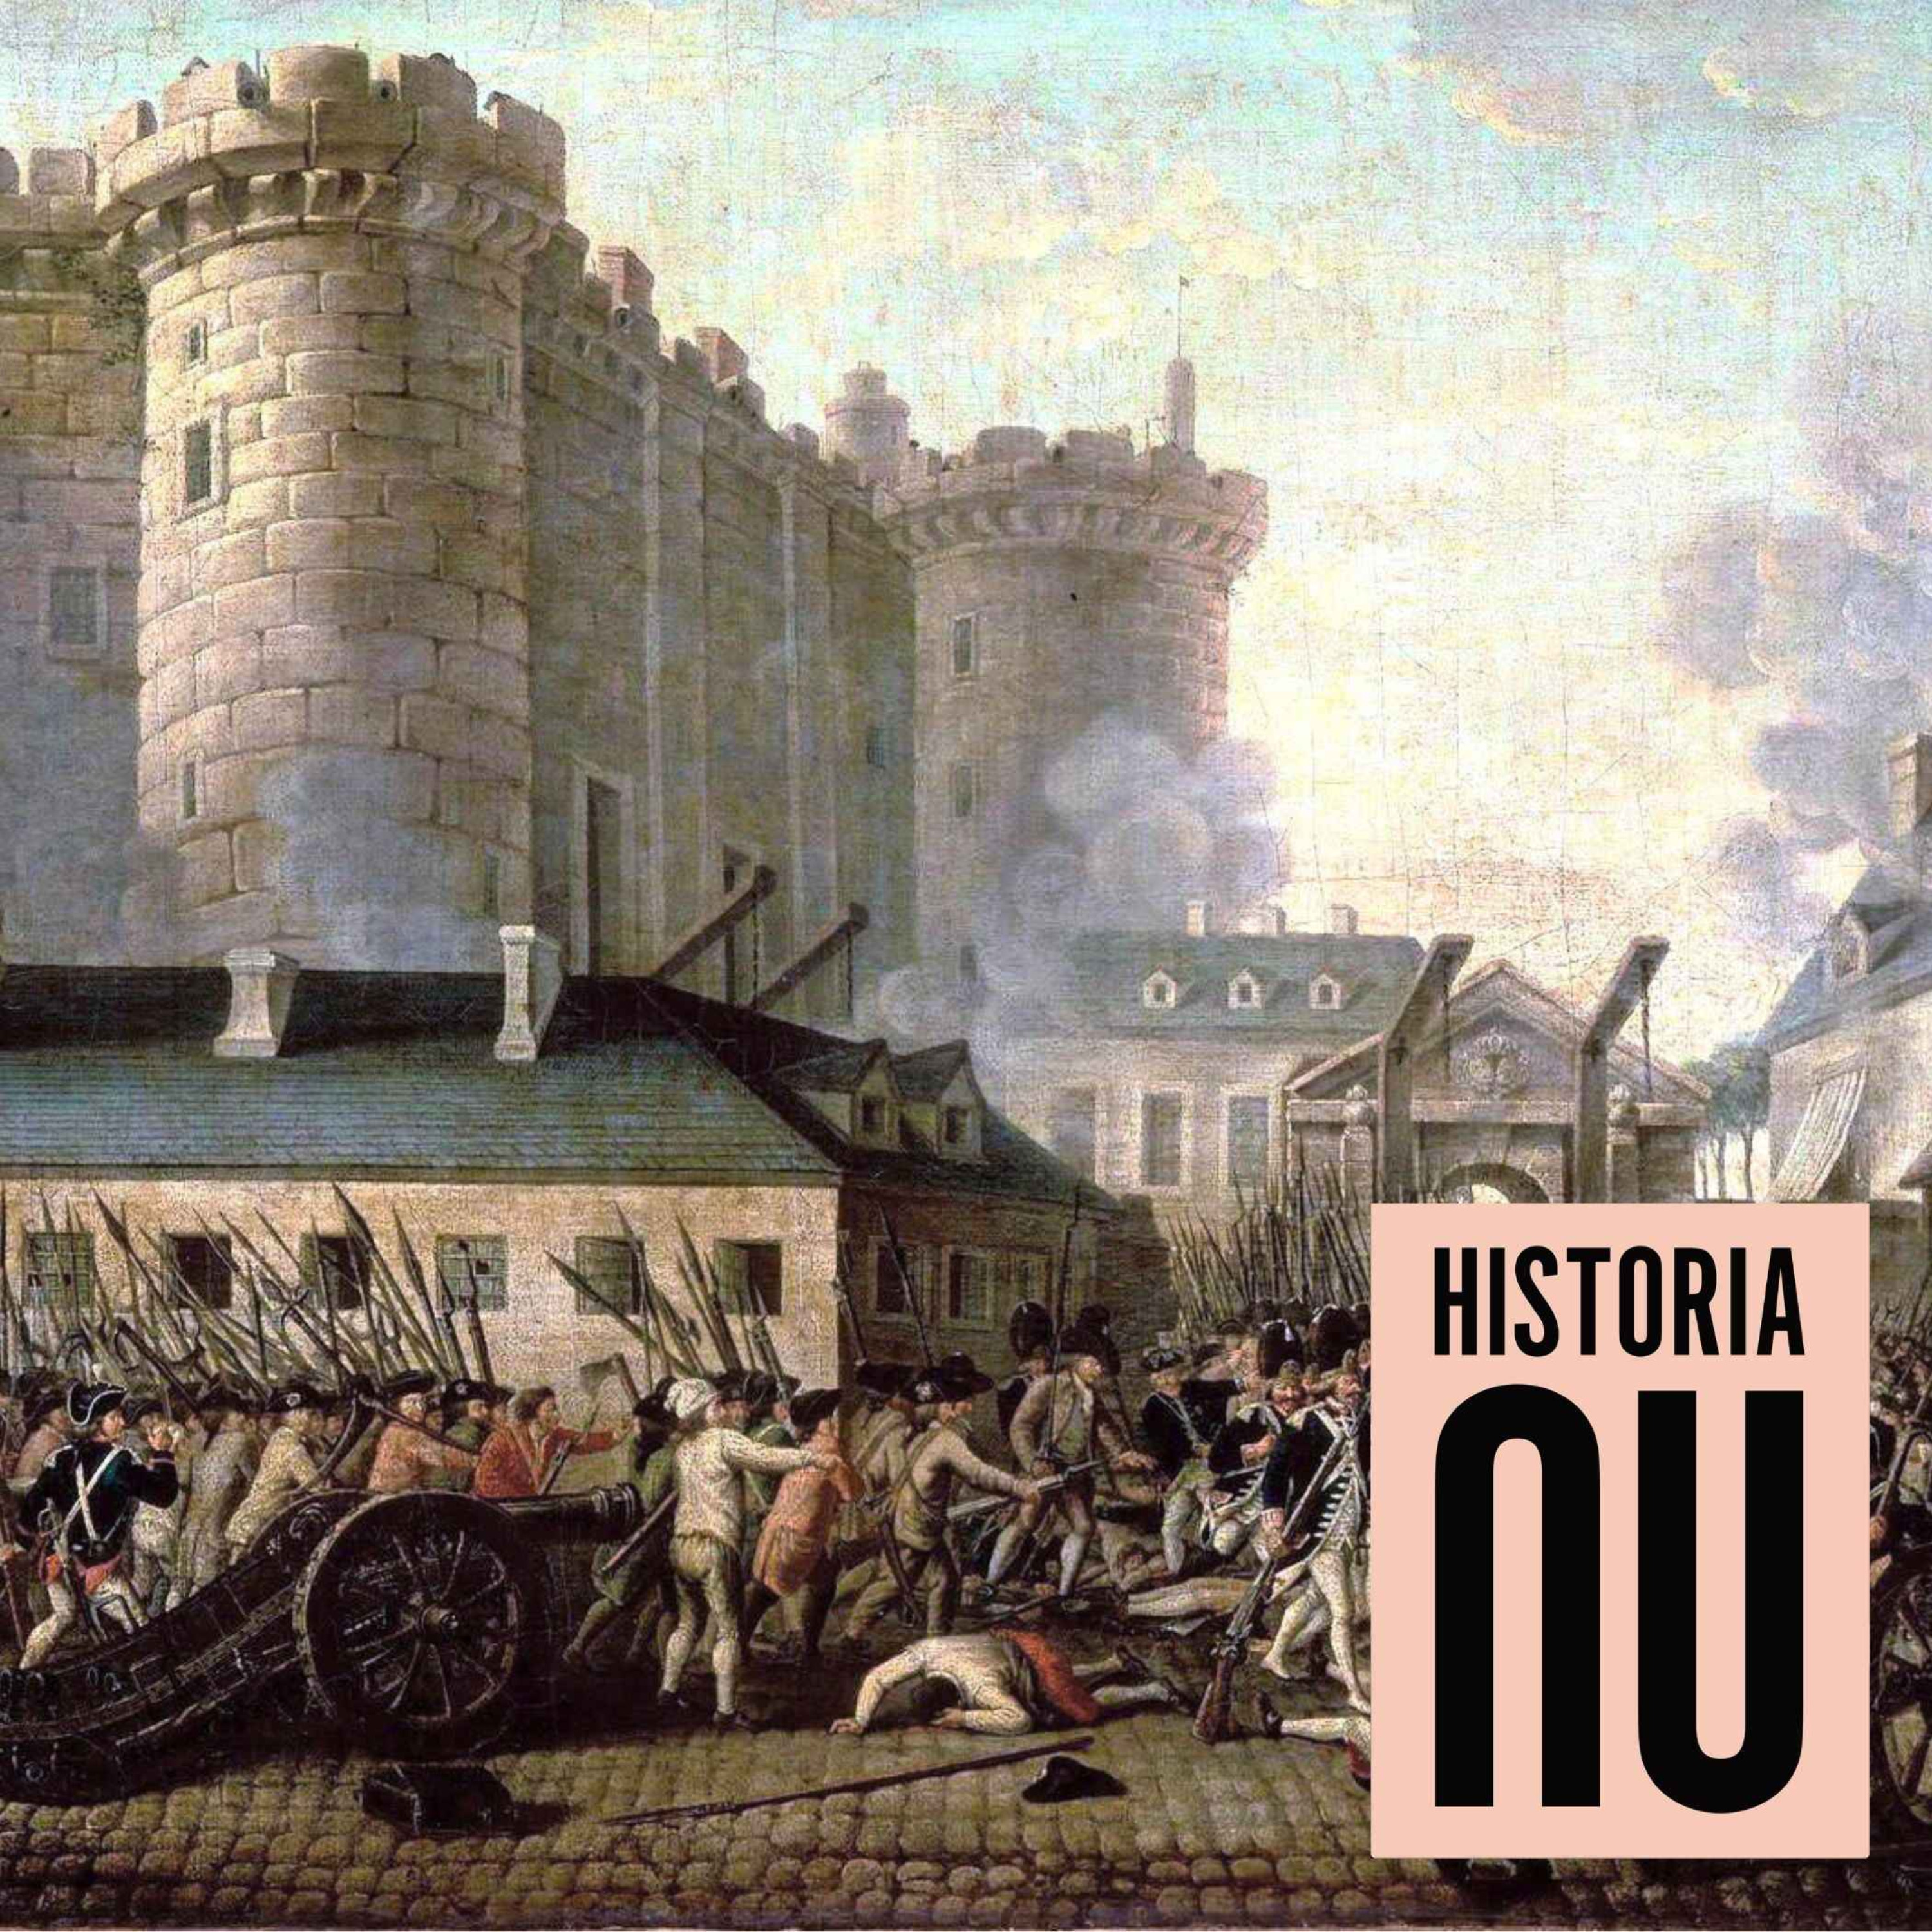 Den franska revolutionen förändrade allt i floder av blod (nymixad repris)